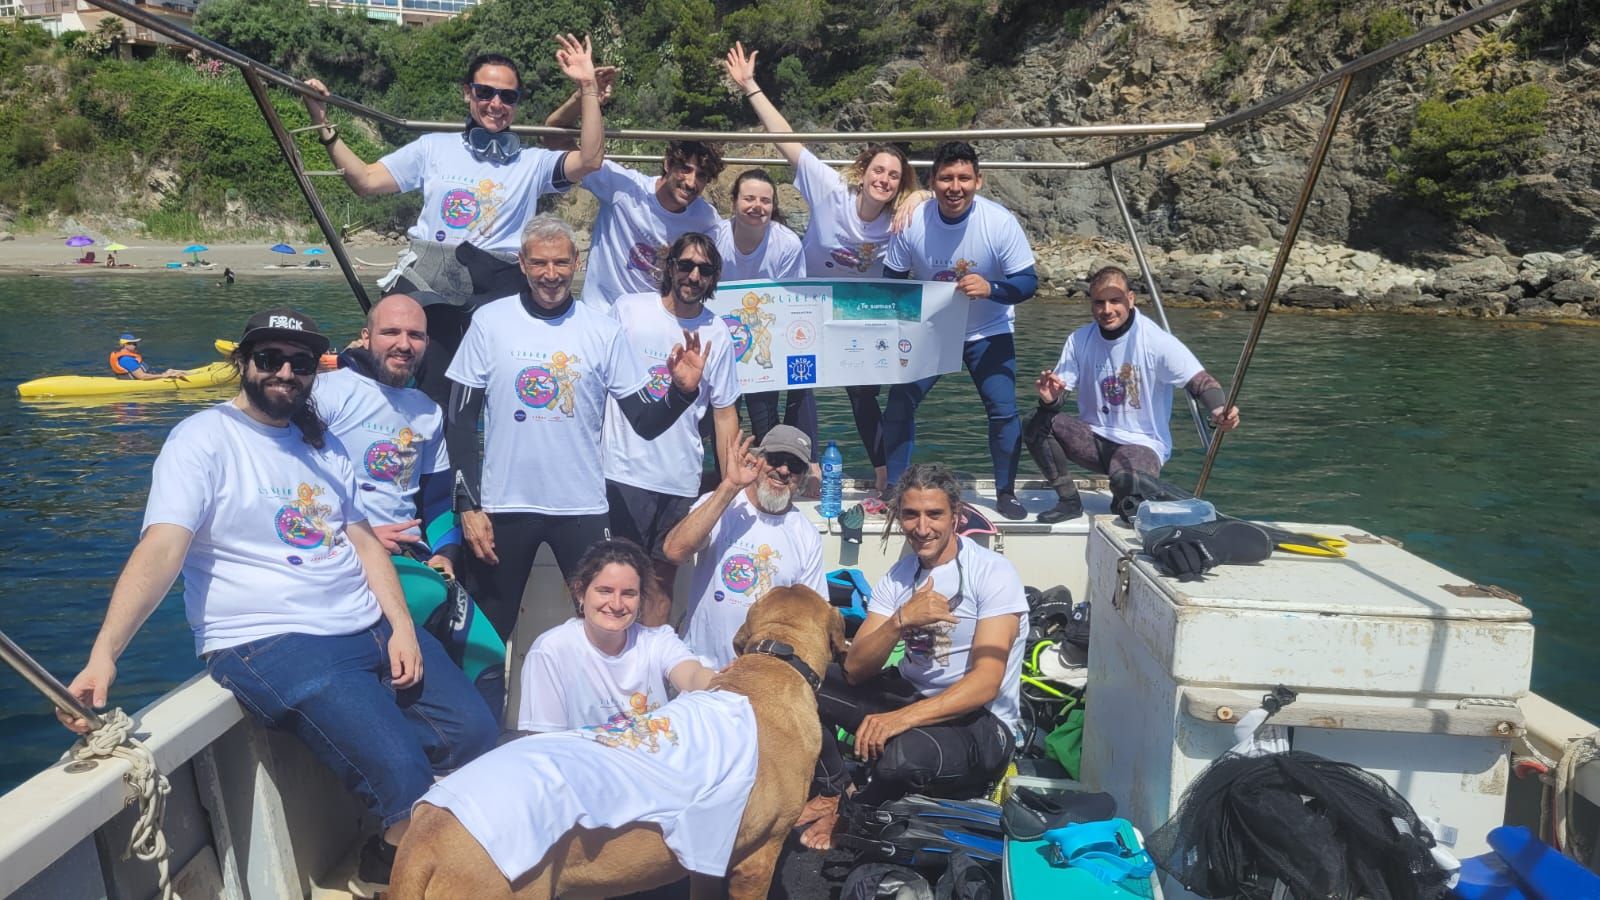 Platges Netes Llançà col·labora Vigilantes Marinos dins del projecte amb Libera per netejar la platja del Cau del Llop